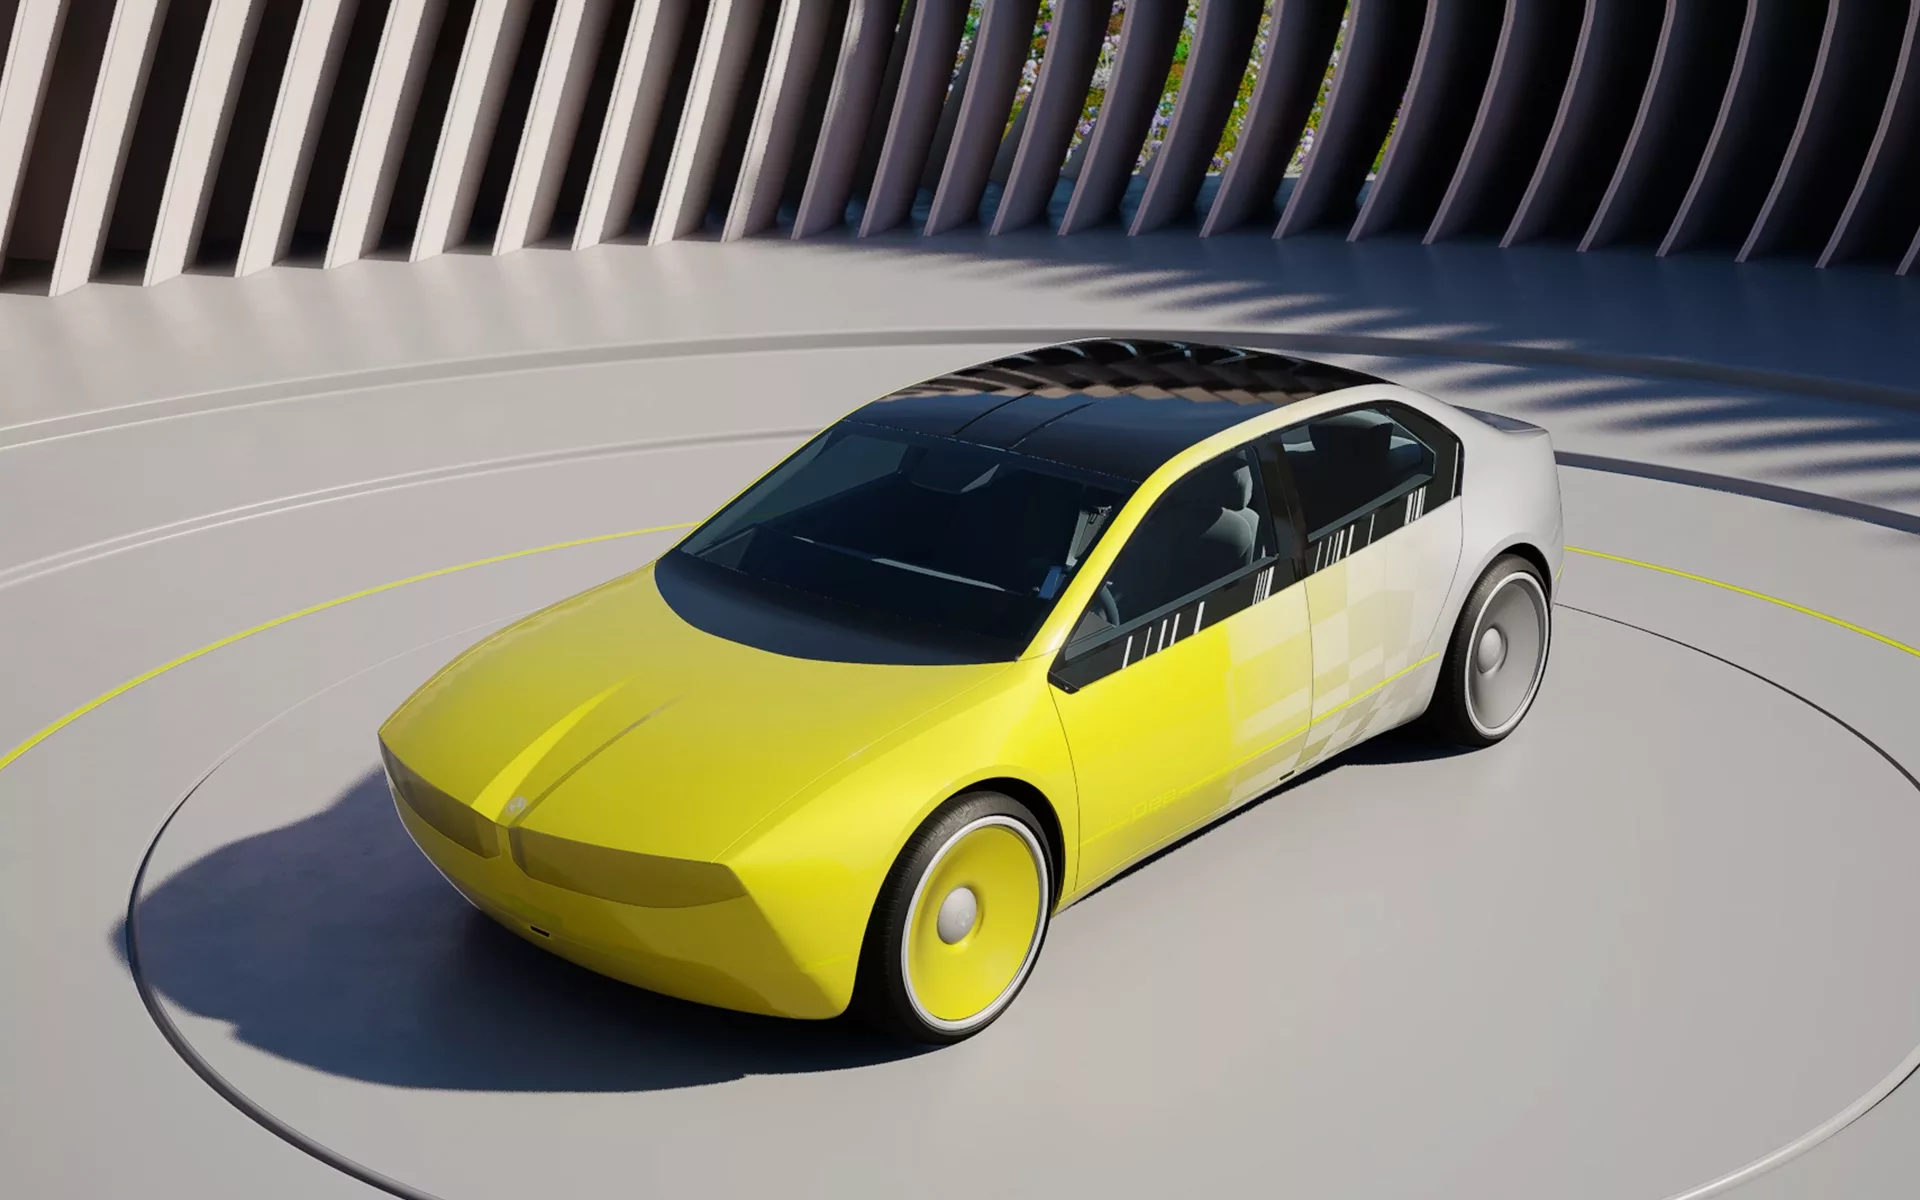 Voiture électrique : les futures BMW vont entrer dans une nouvelle dimension